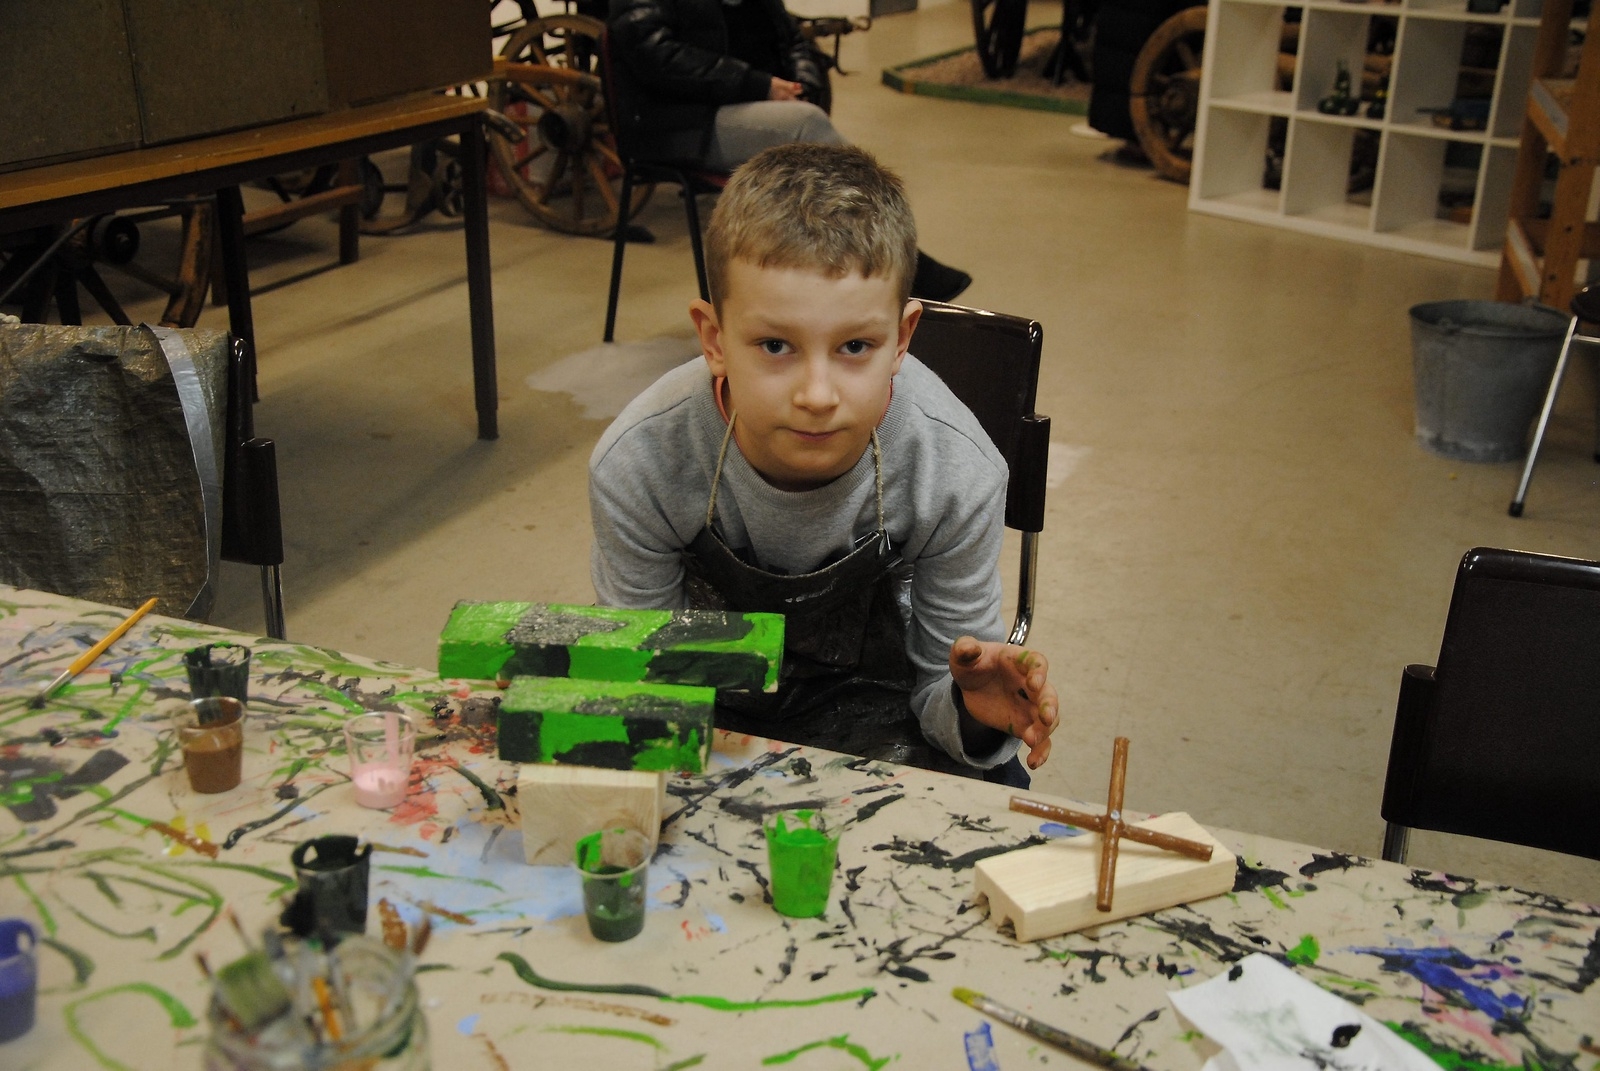 Filip Samevik tycker om teknik och att bygga saker med trä och lego. Här har han byggt ett flygplan.    Foto: Stefan Olofson